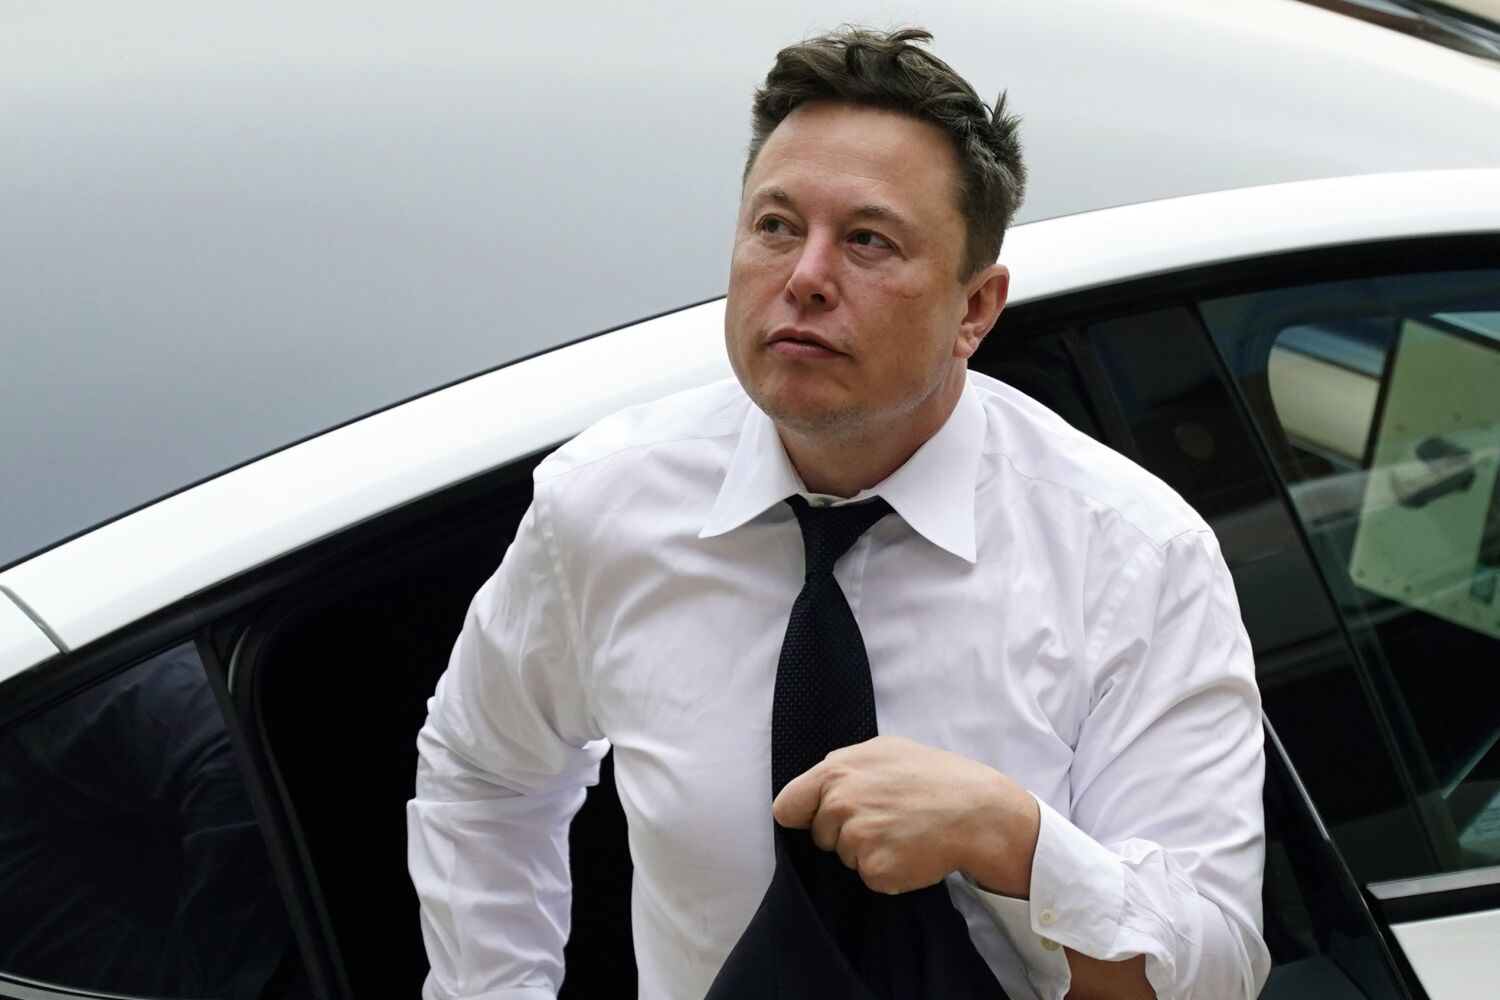 Tidak ada laporan polisi yang diajukan dalam klaim ‘penguntit’ Elon Musk, kata LAPD